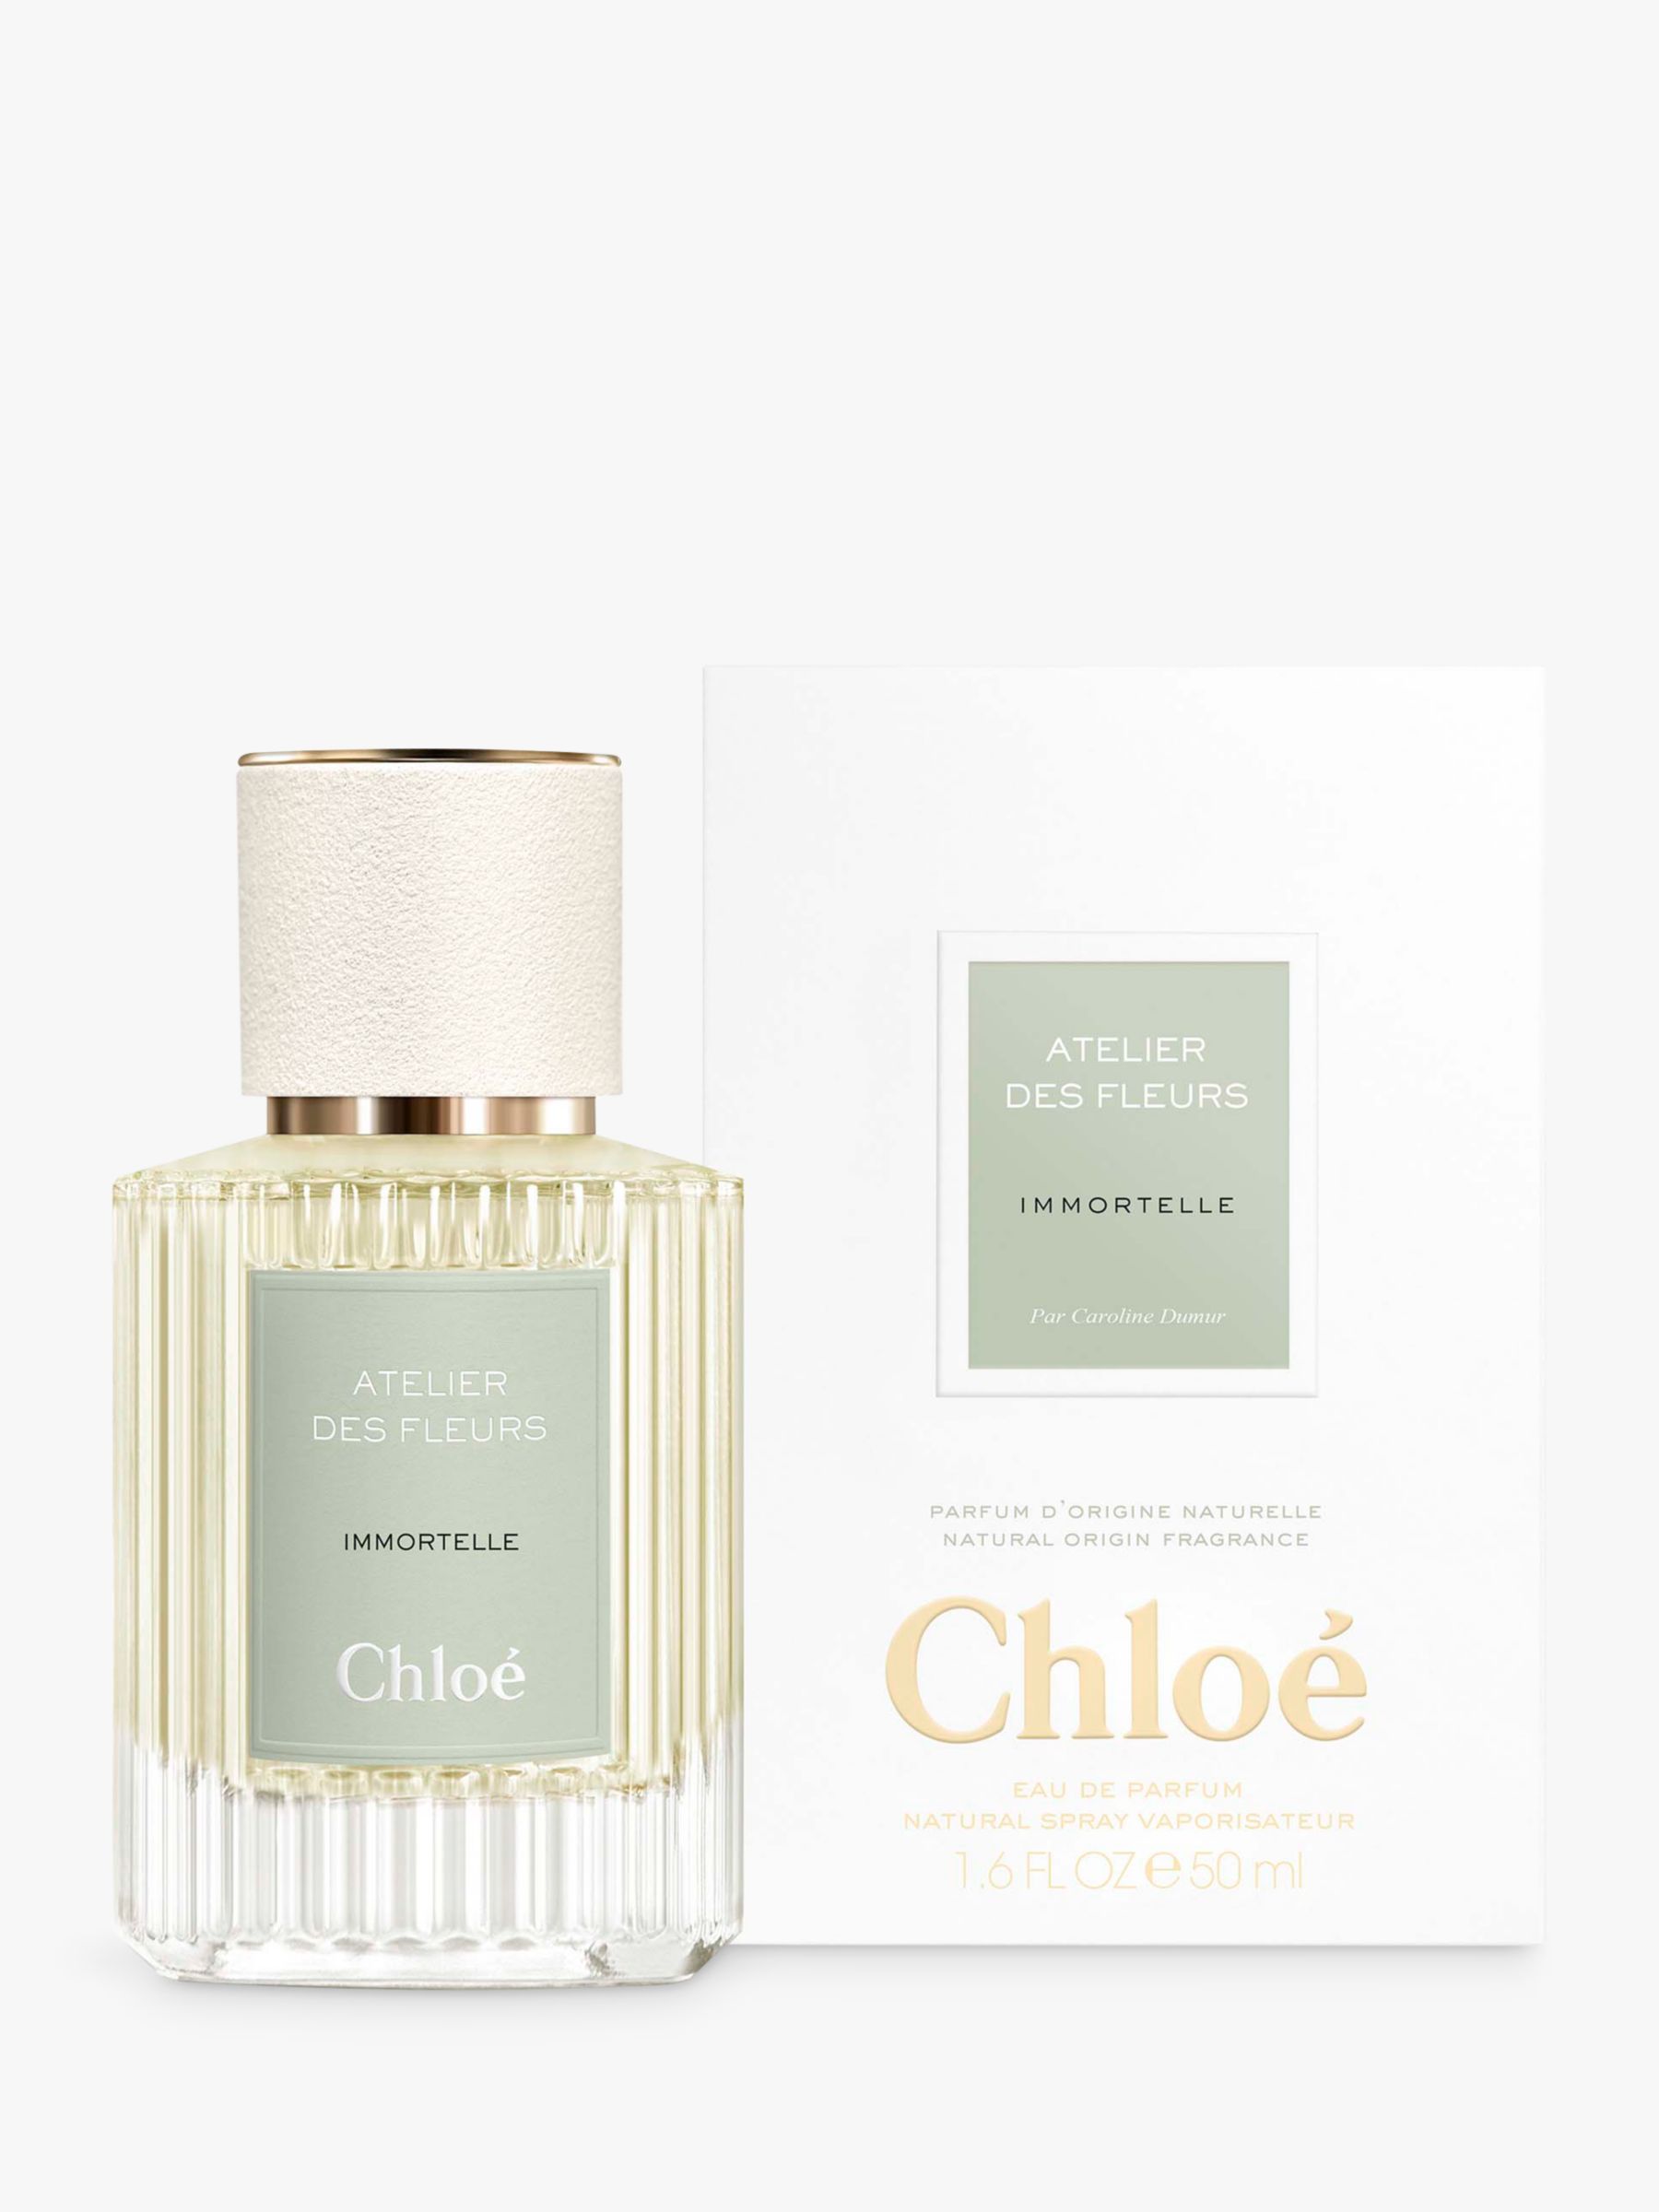 Chloé Atelier des Fleurs Immortelle Eau de Parfum, 50ml